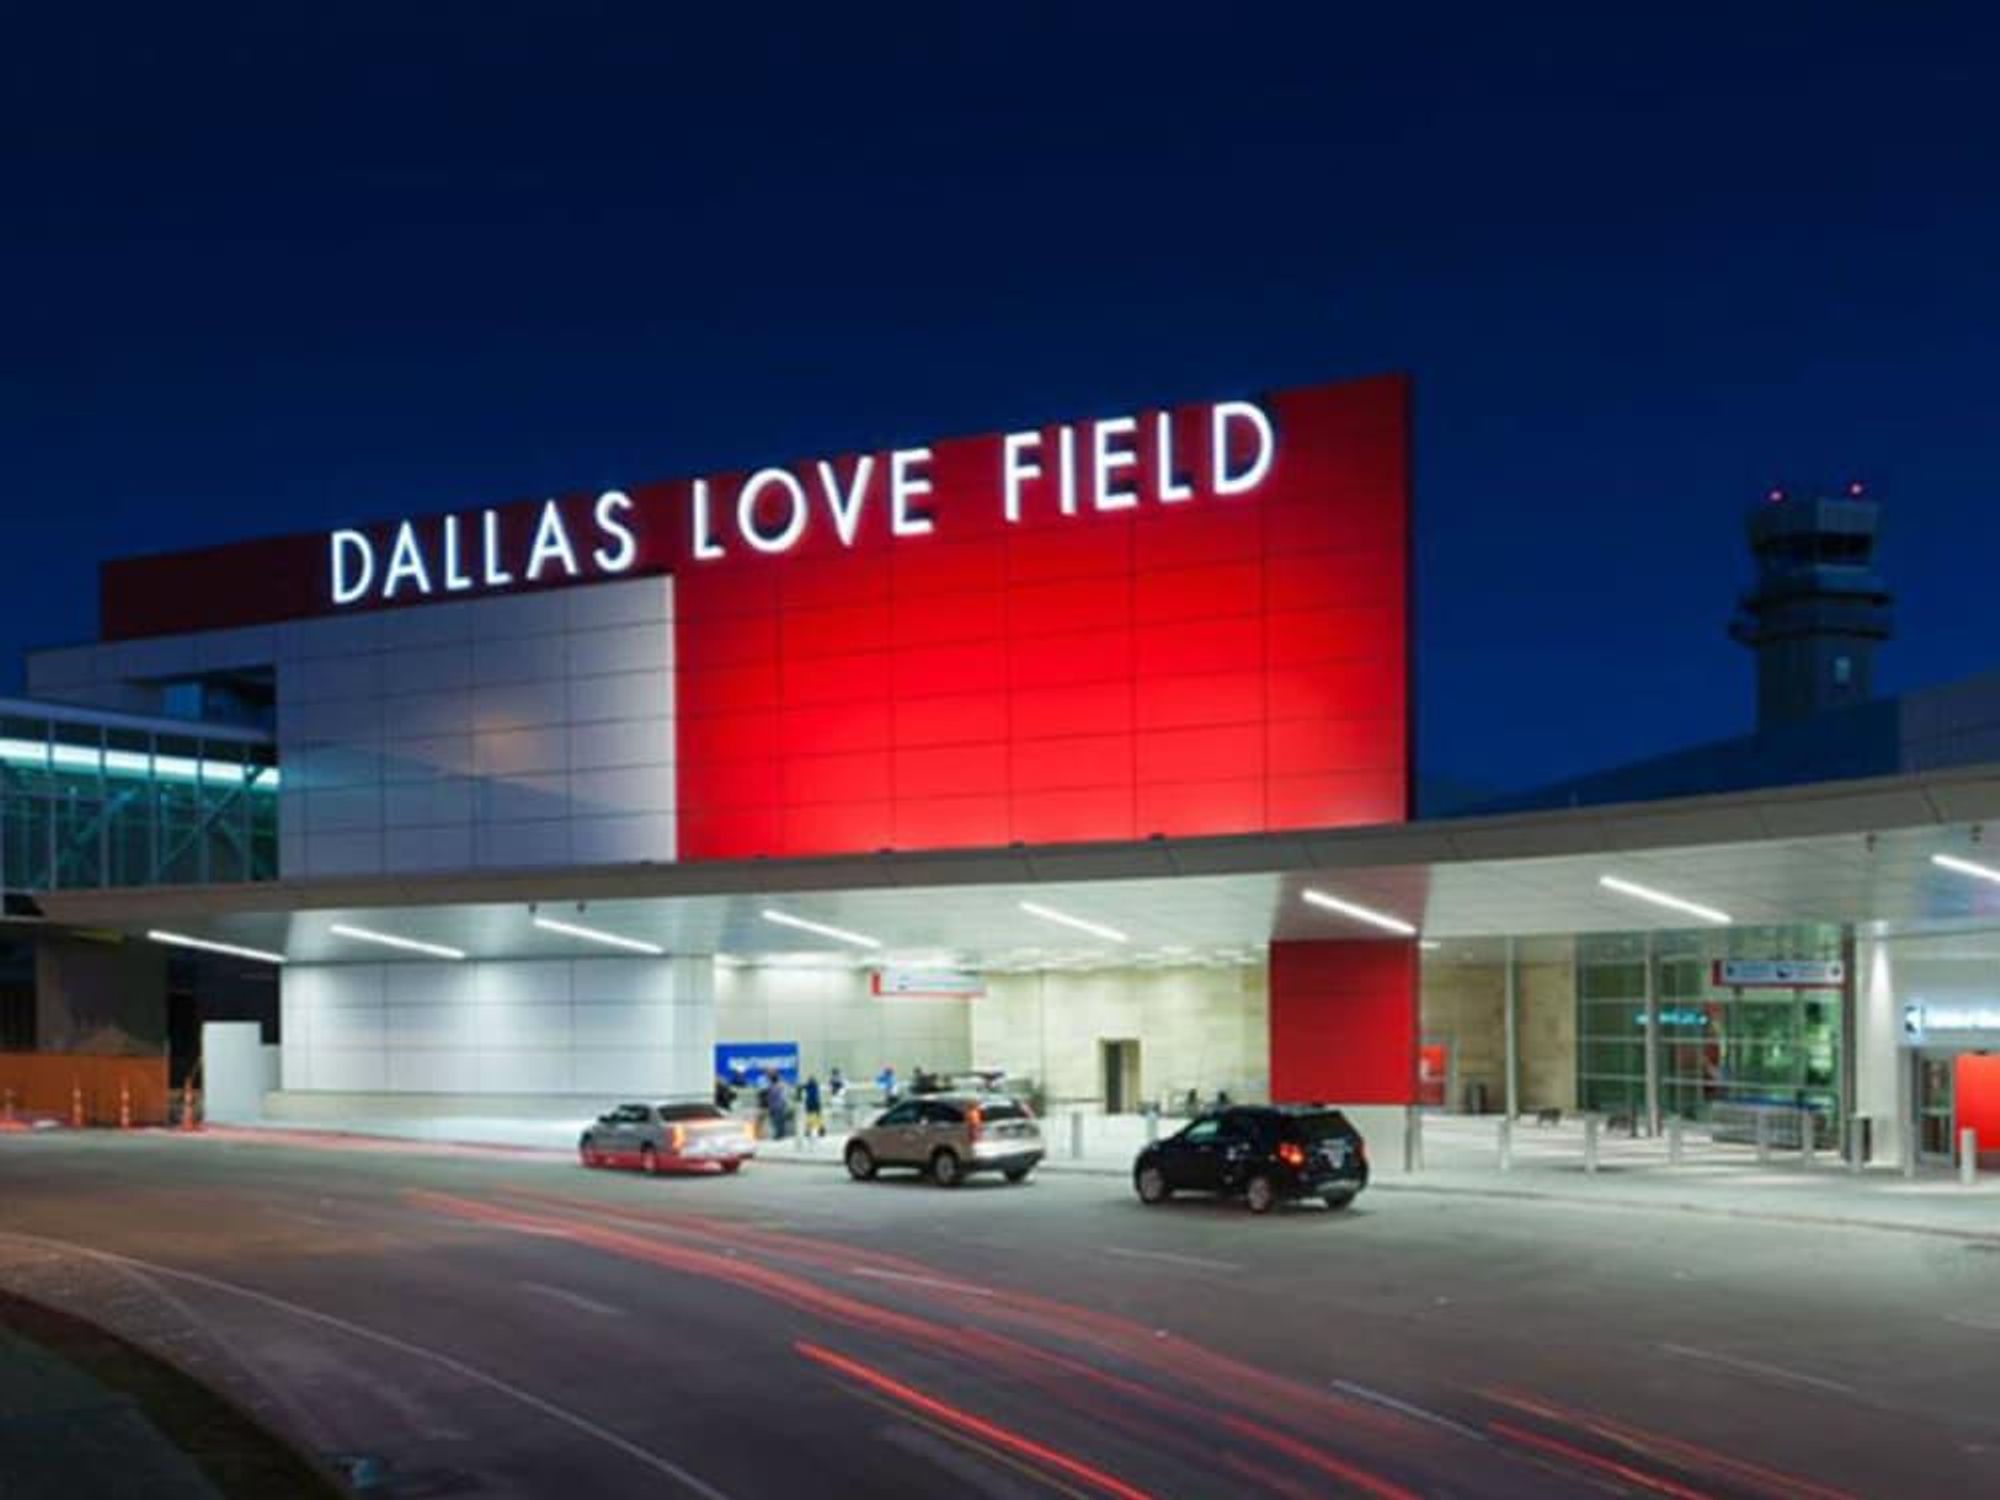 Dallas Love Field airport